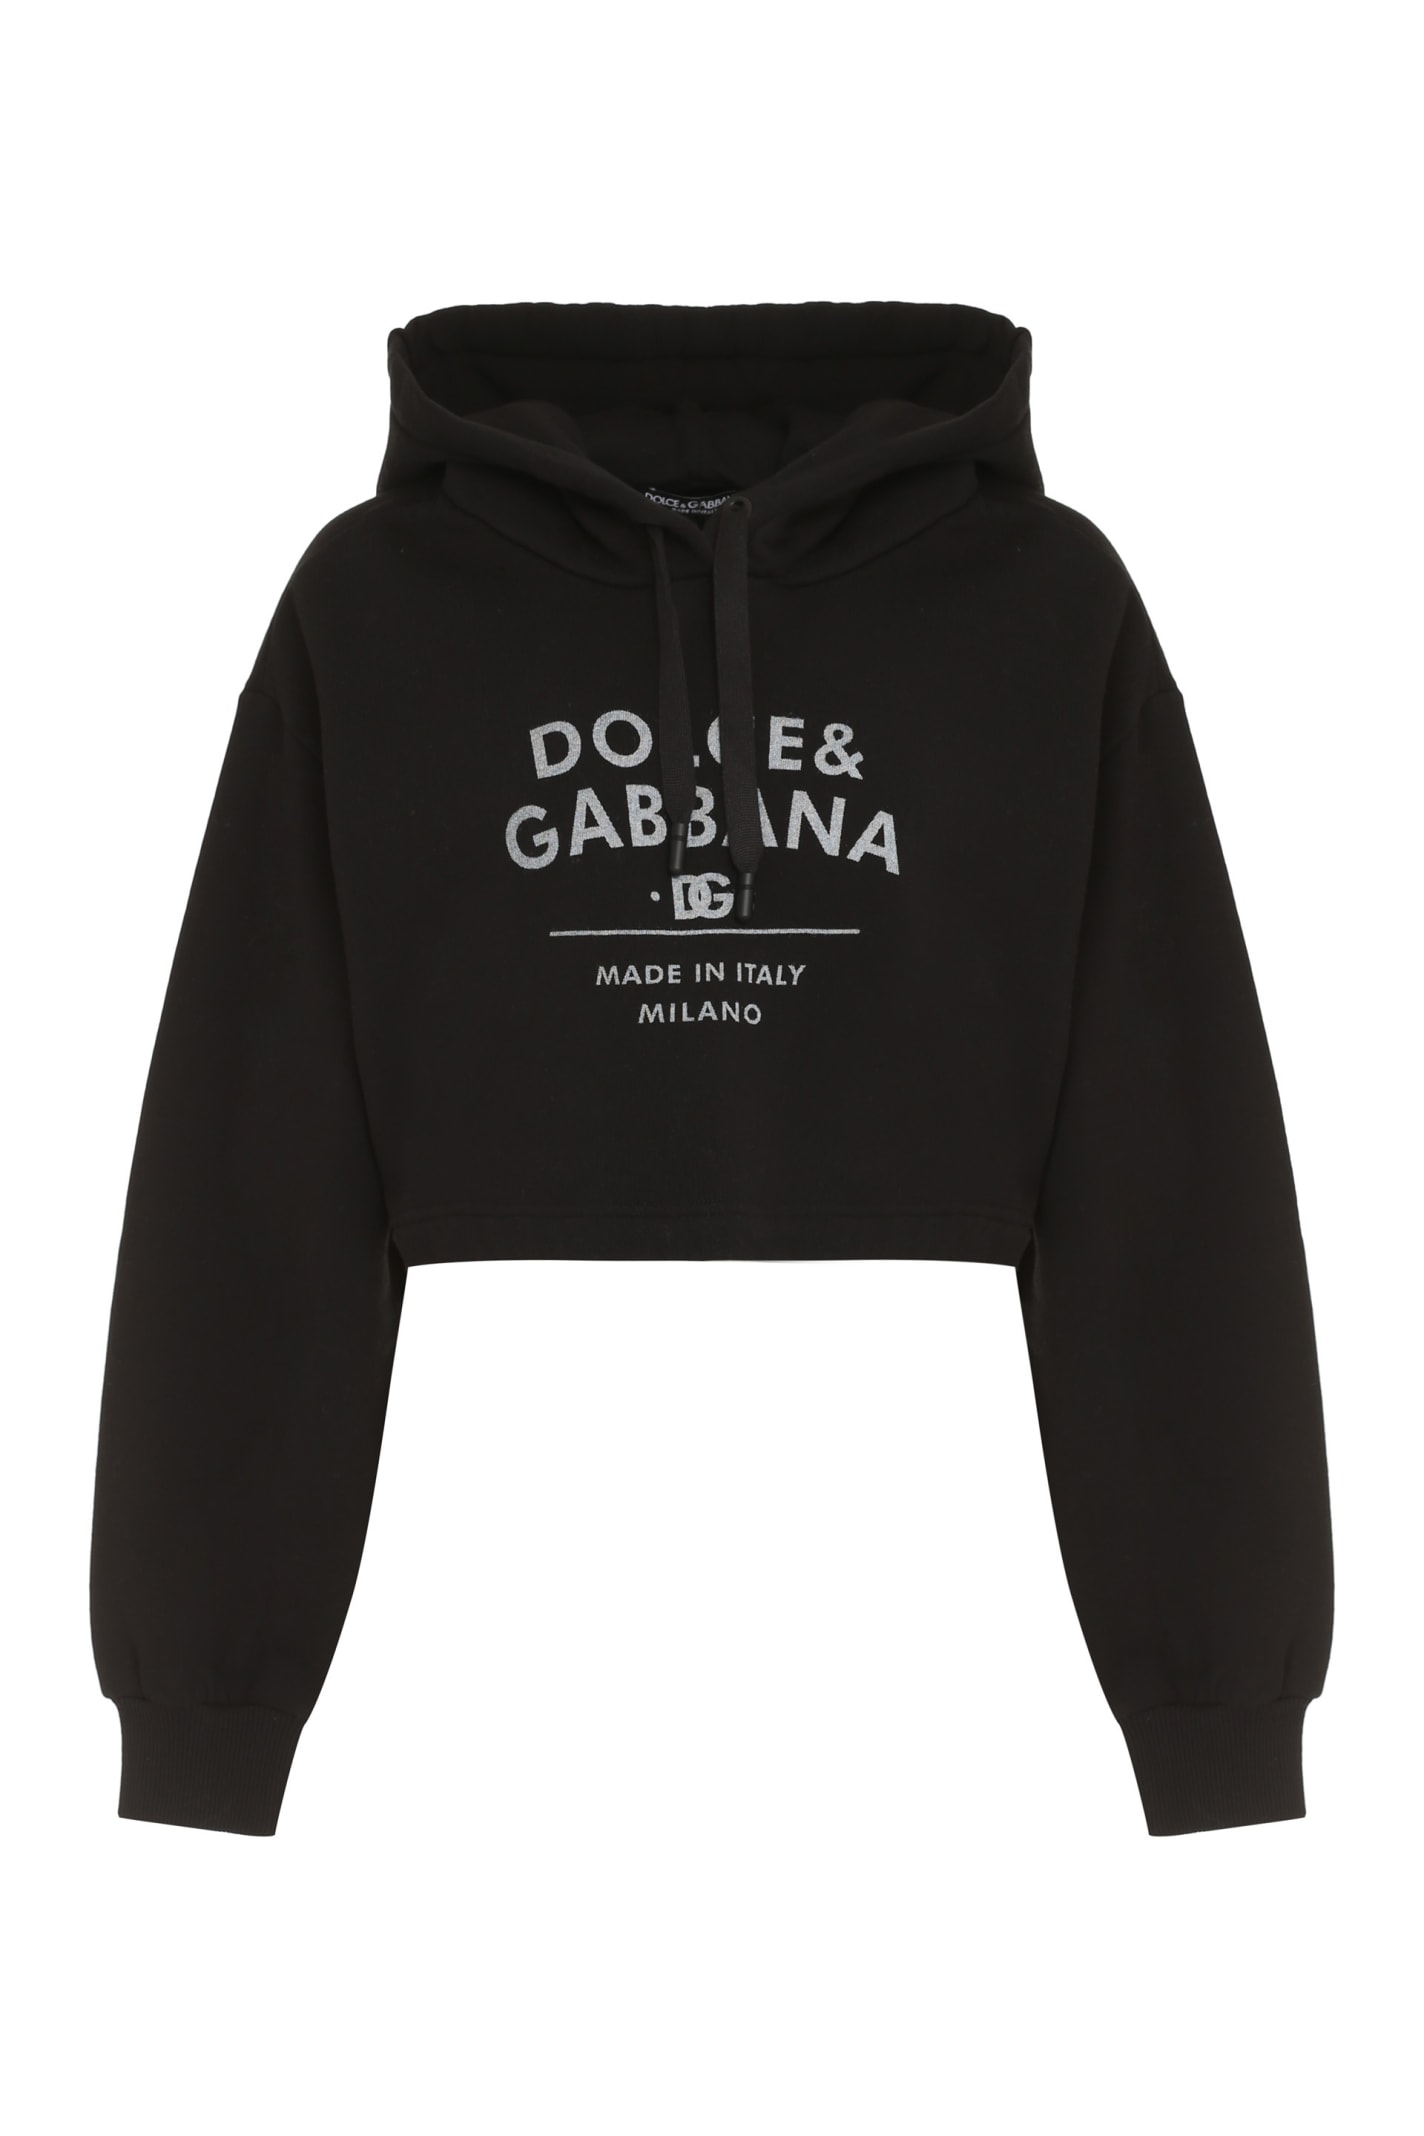 Dolce & Gabbana Cotton Hoodie